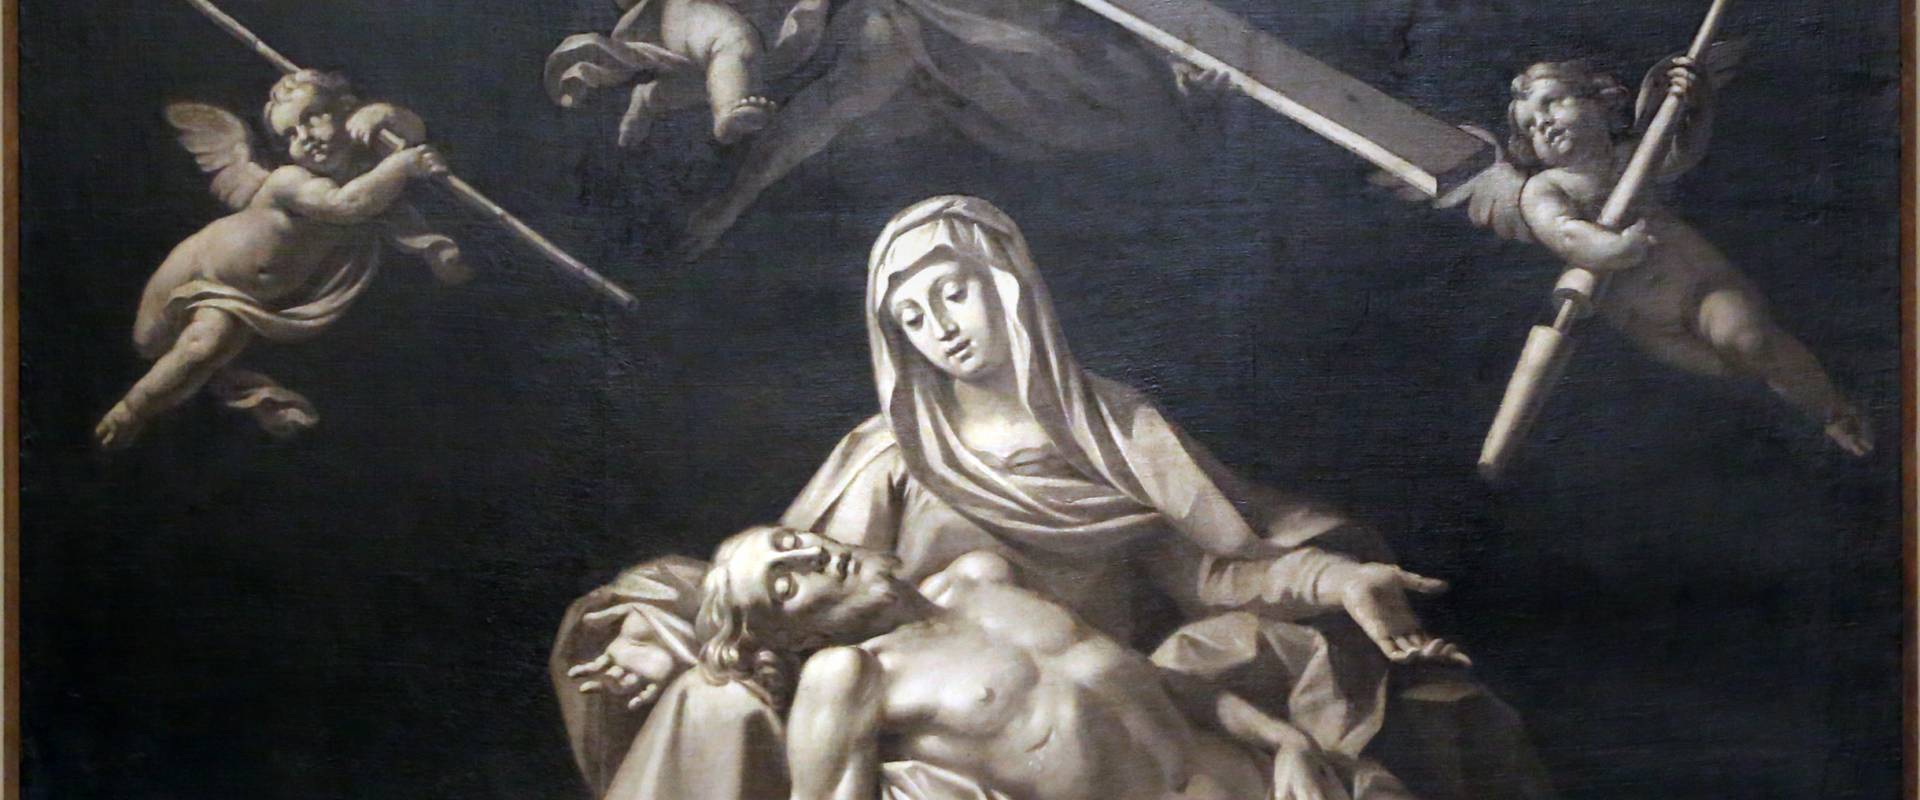 Antonio consetti (attr.), pietà e angeli coi simboli della passione, 1700-50 ca photo by Sailko